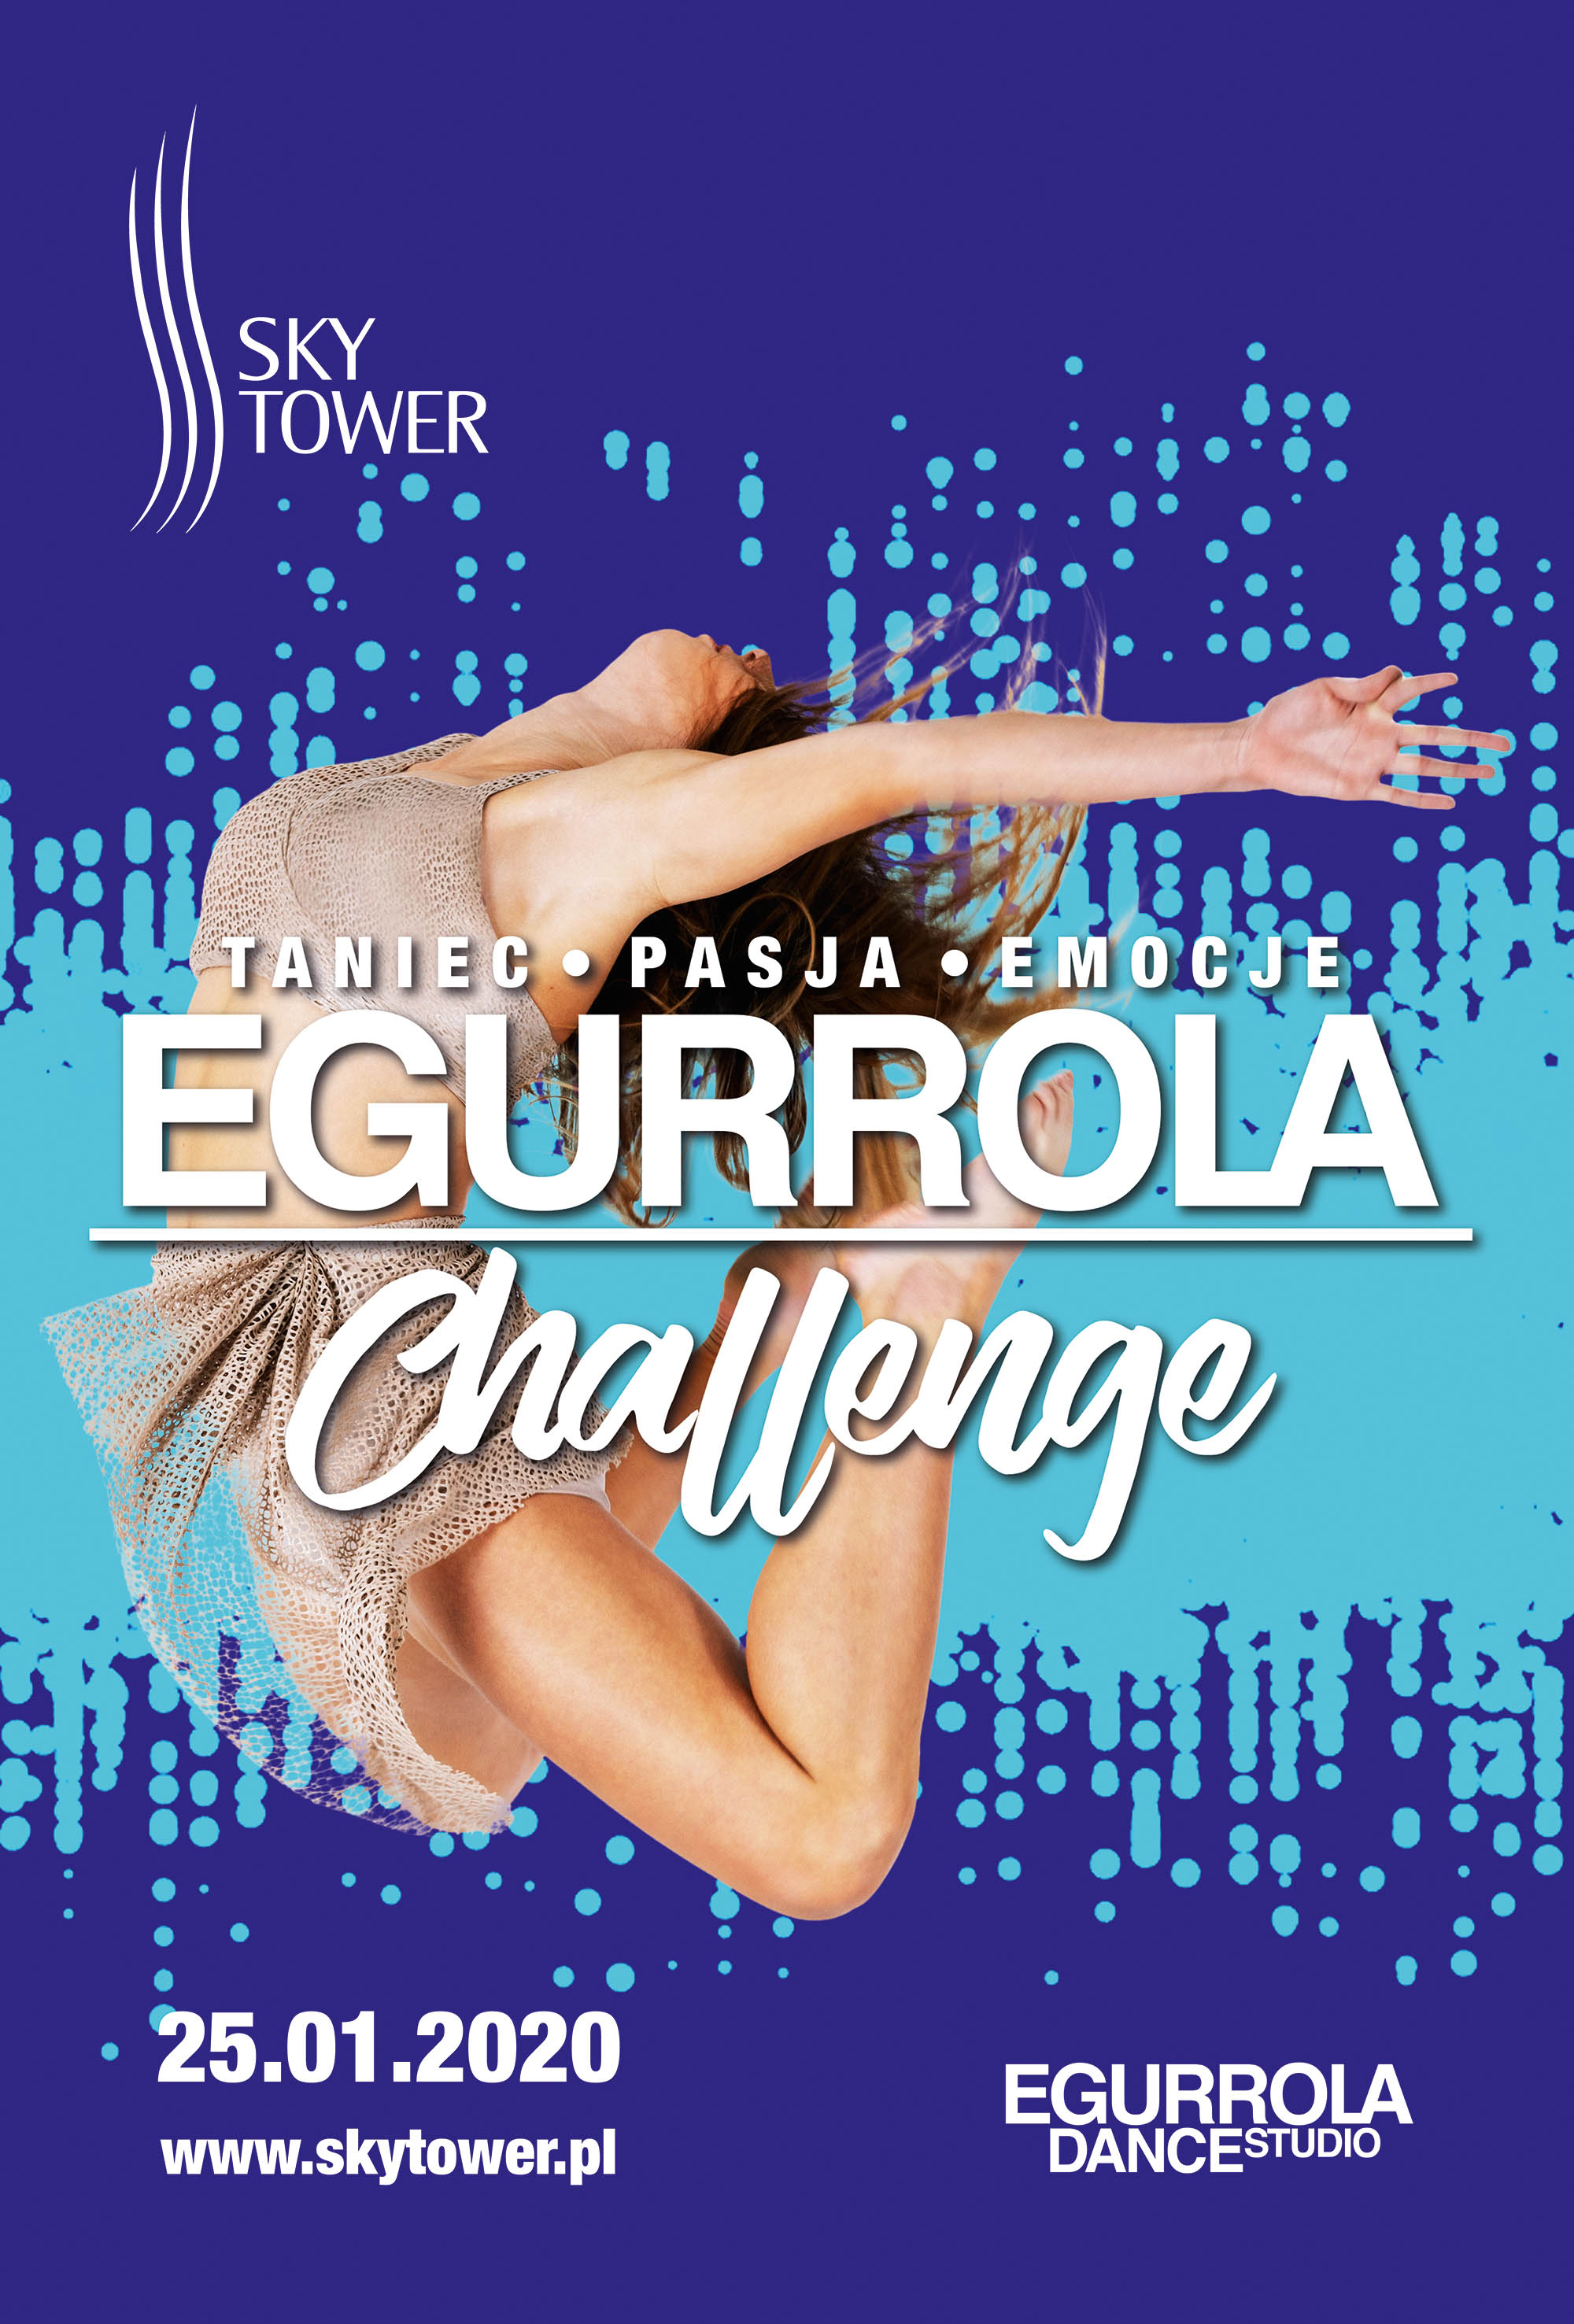 Sky Tower: Taneczne show uczniów Egurrola Dance Studio